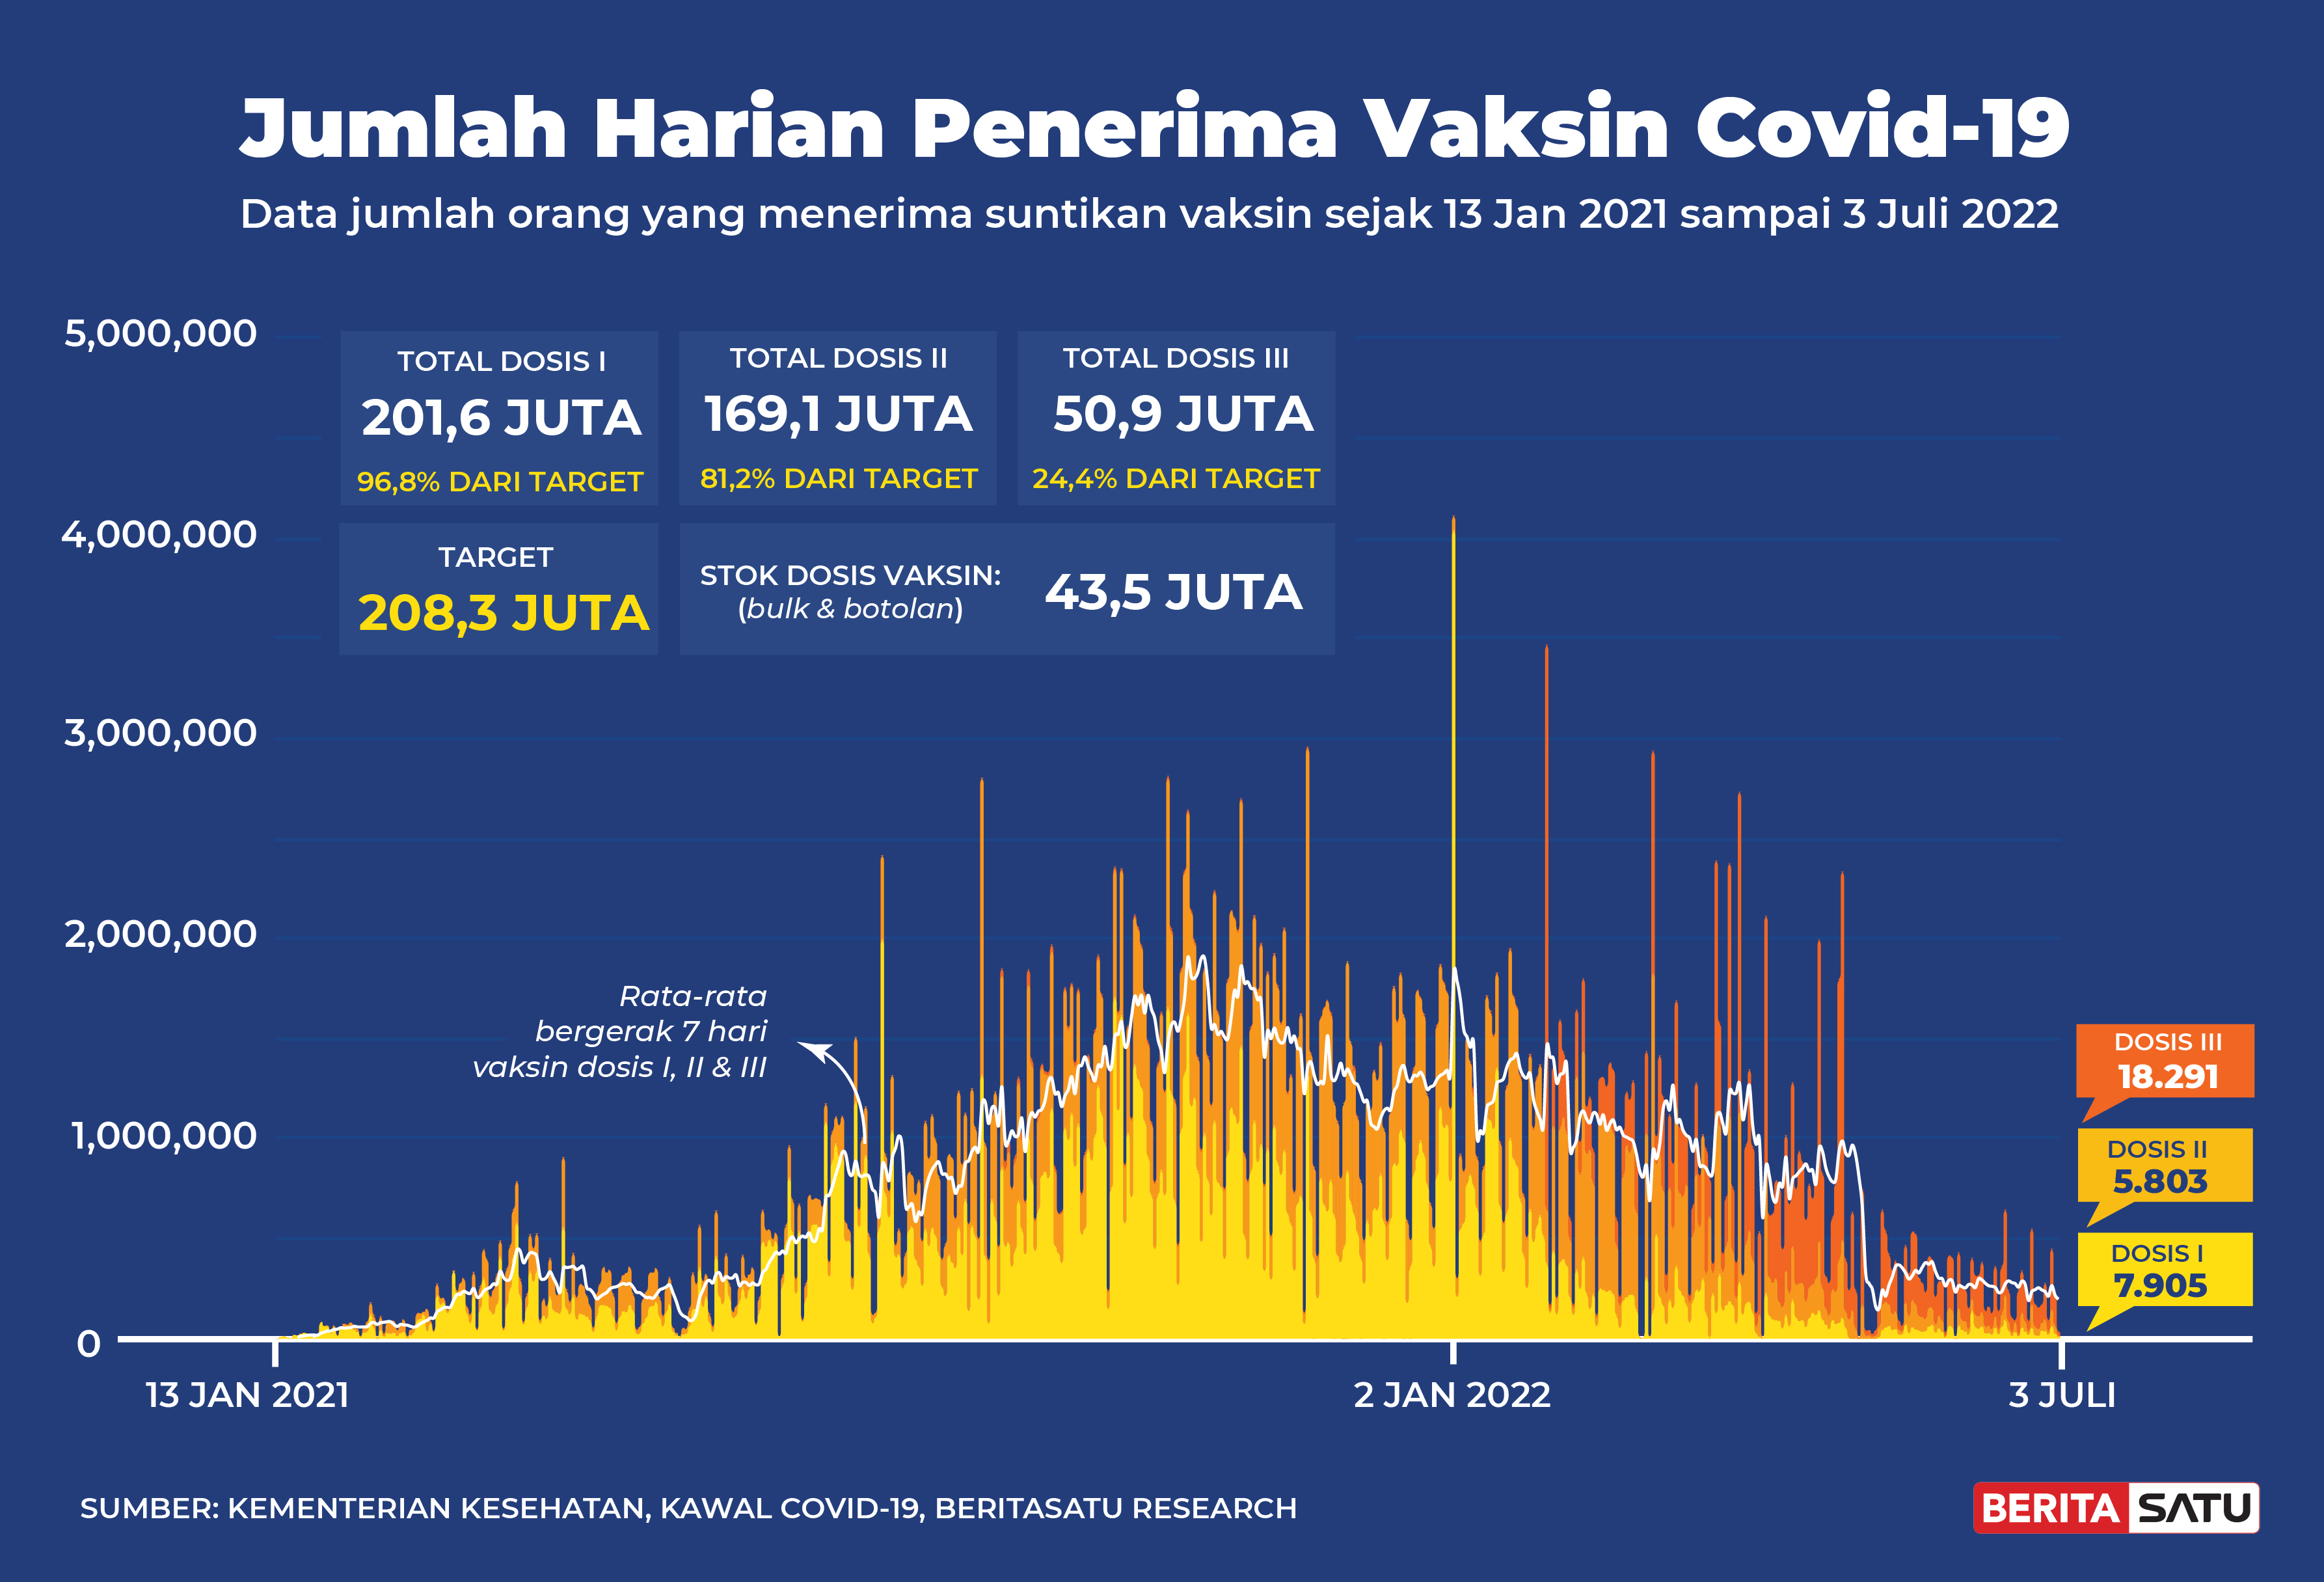 Penerima Vaksin Covid-19 di Indonesia sampai 3 Juli 2022